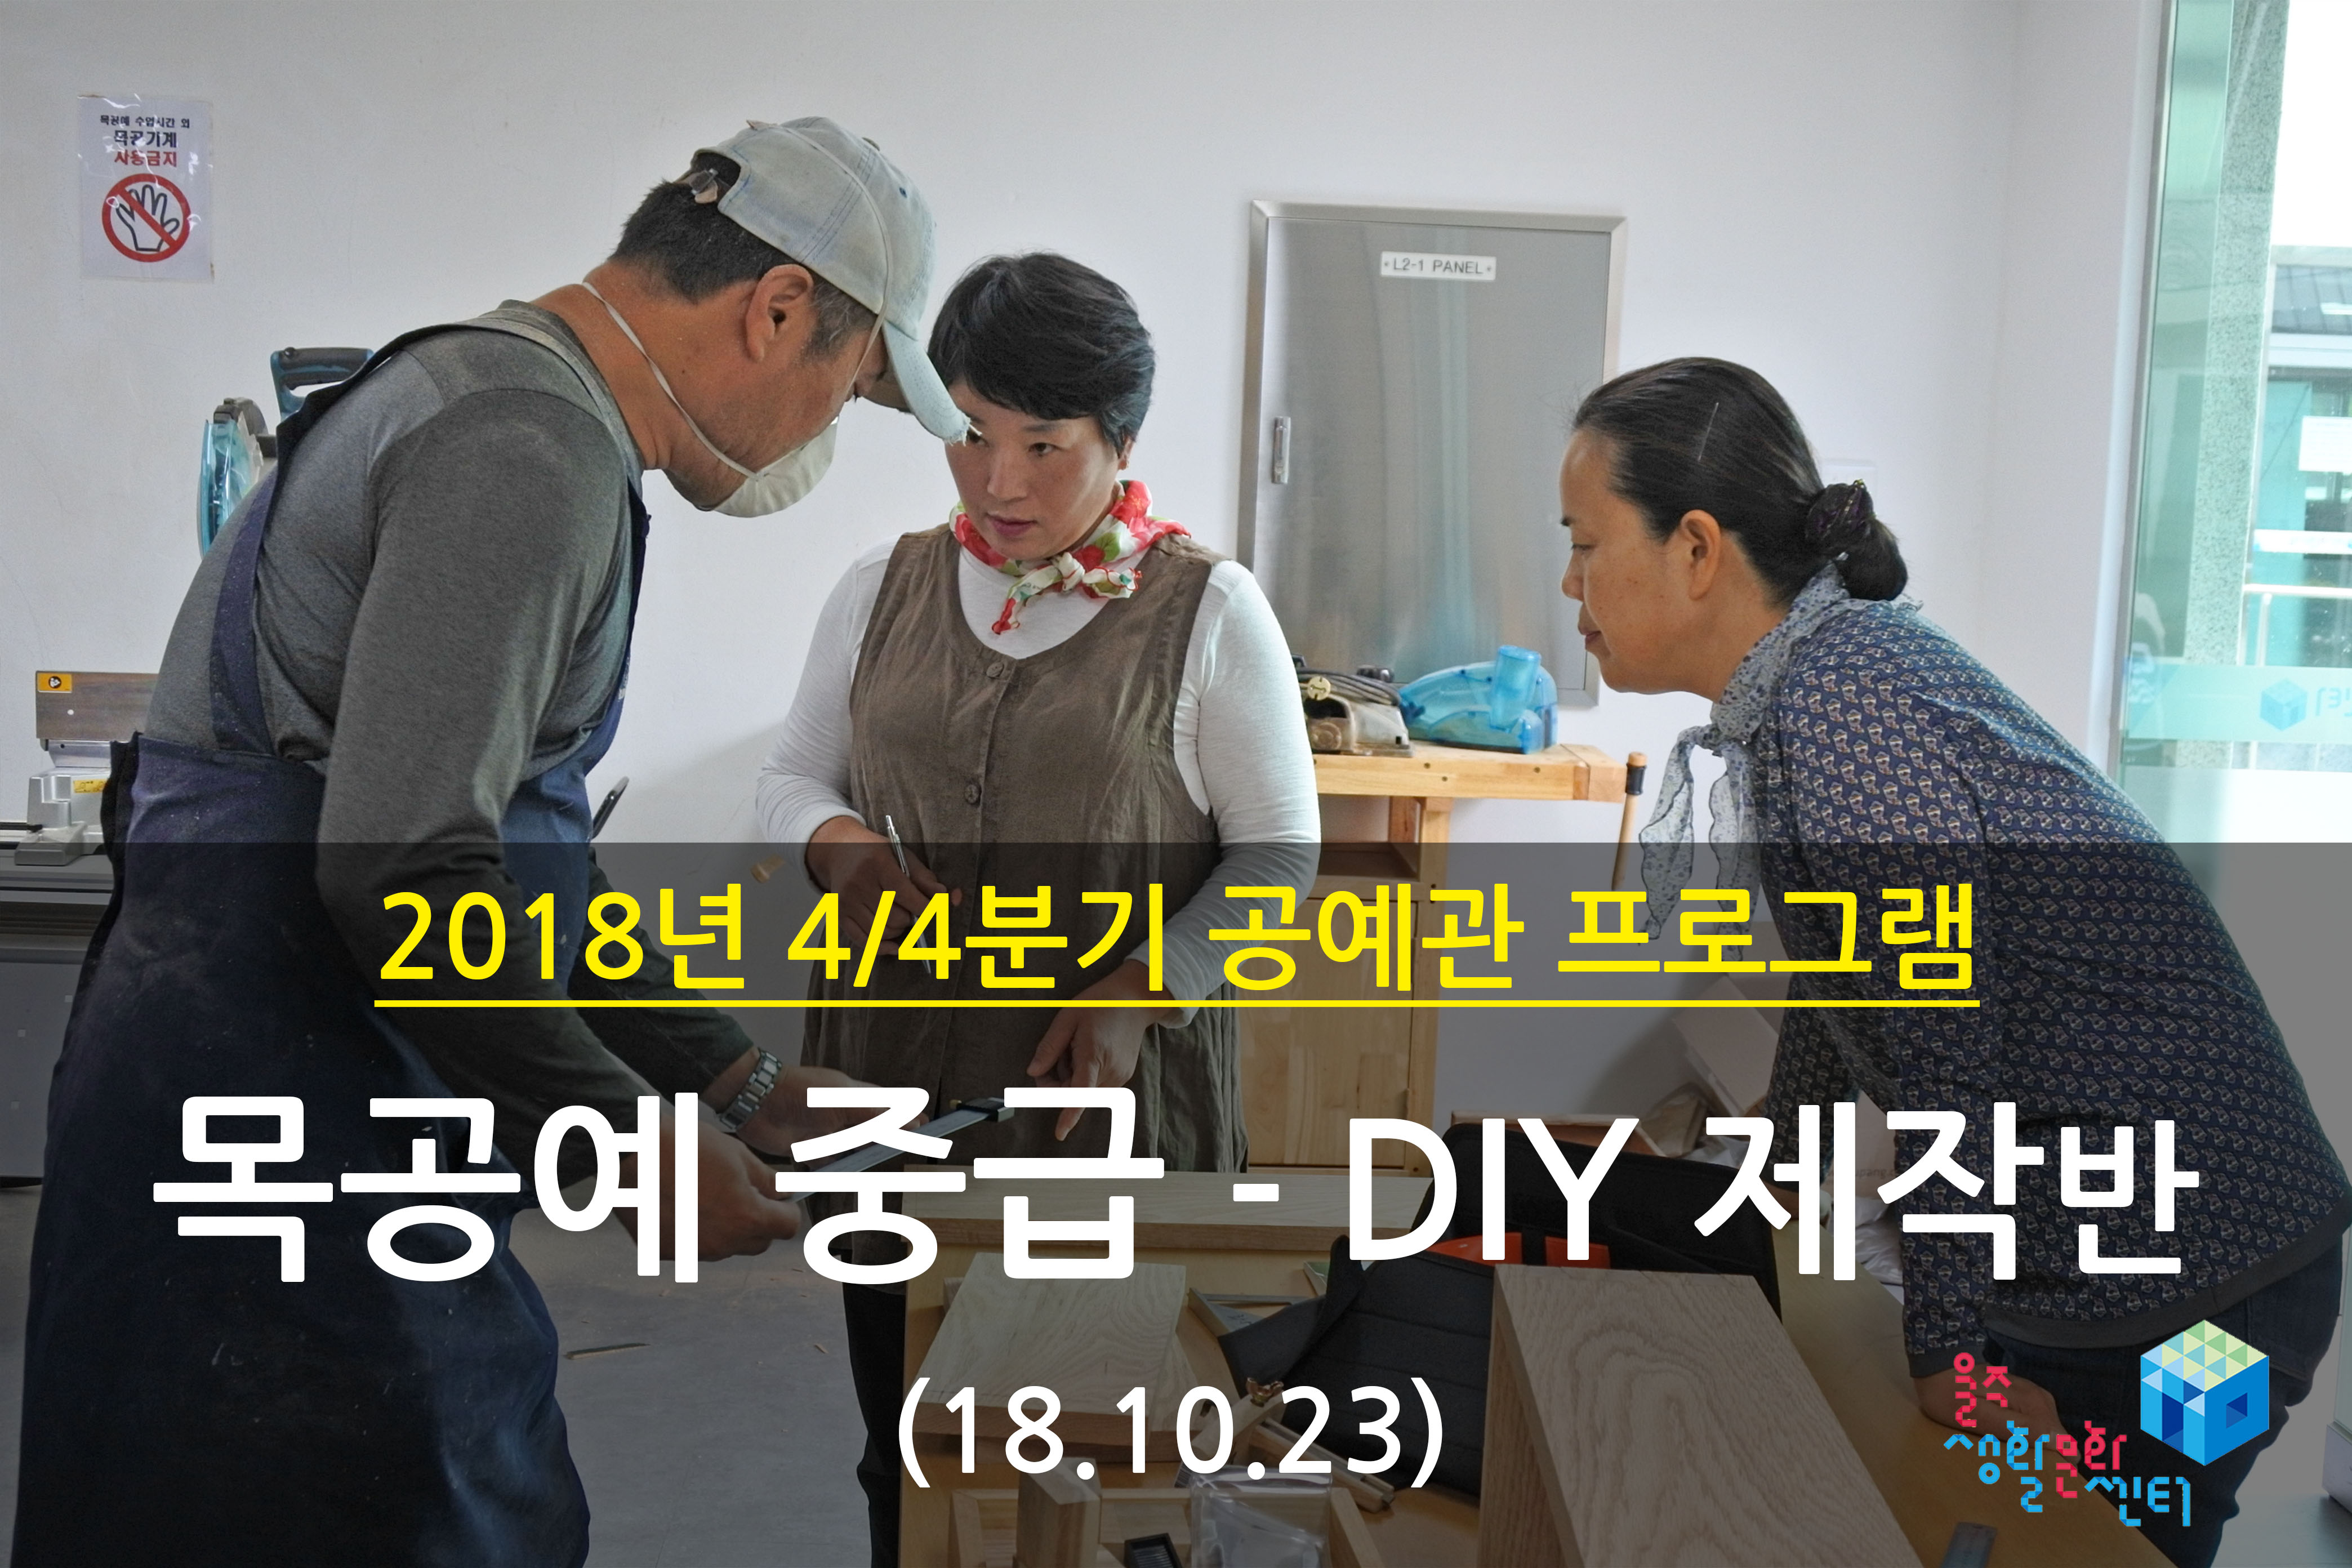 2018.10.23 _ 목공예 중급 - DIY 제작반 _ 4/4분기 3주차 수업